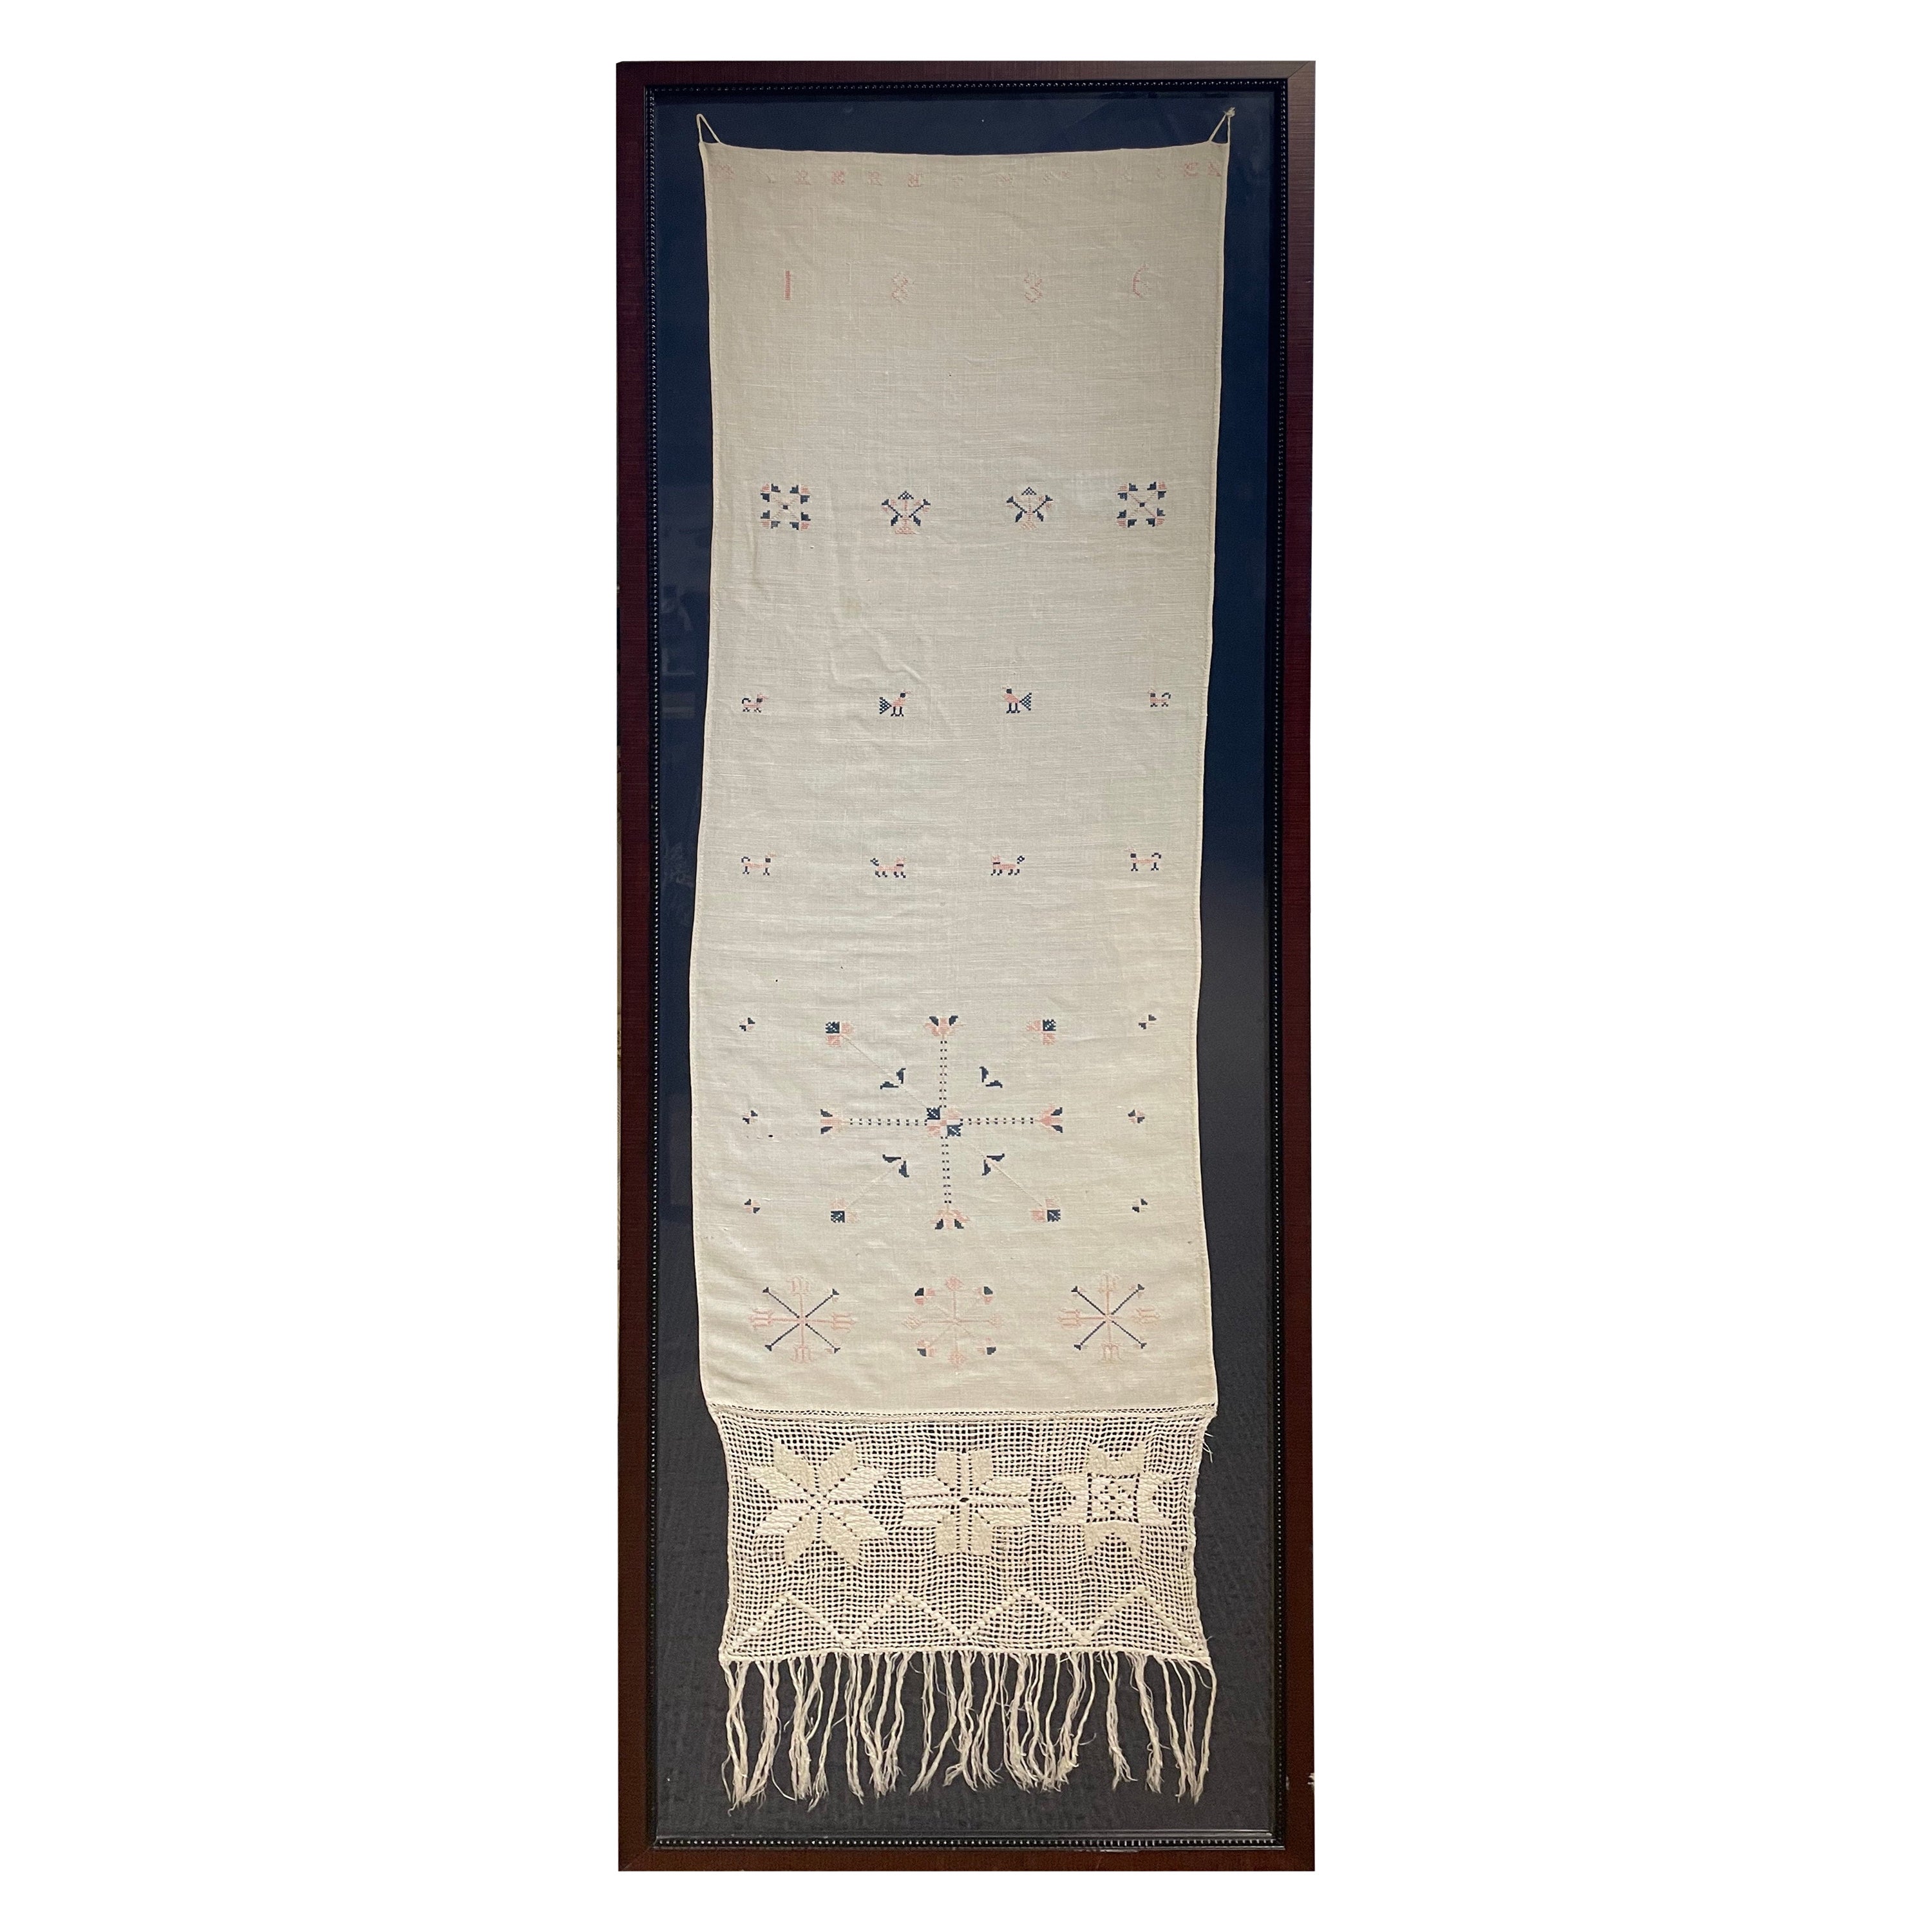 Nadelspitzearbeiten des frühen 19. Jahrhunderts „Show Towel“ datiert 1836